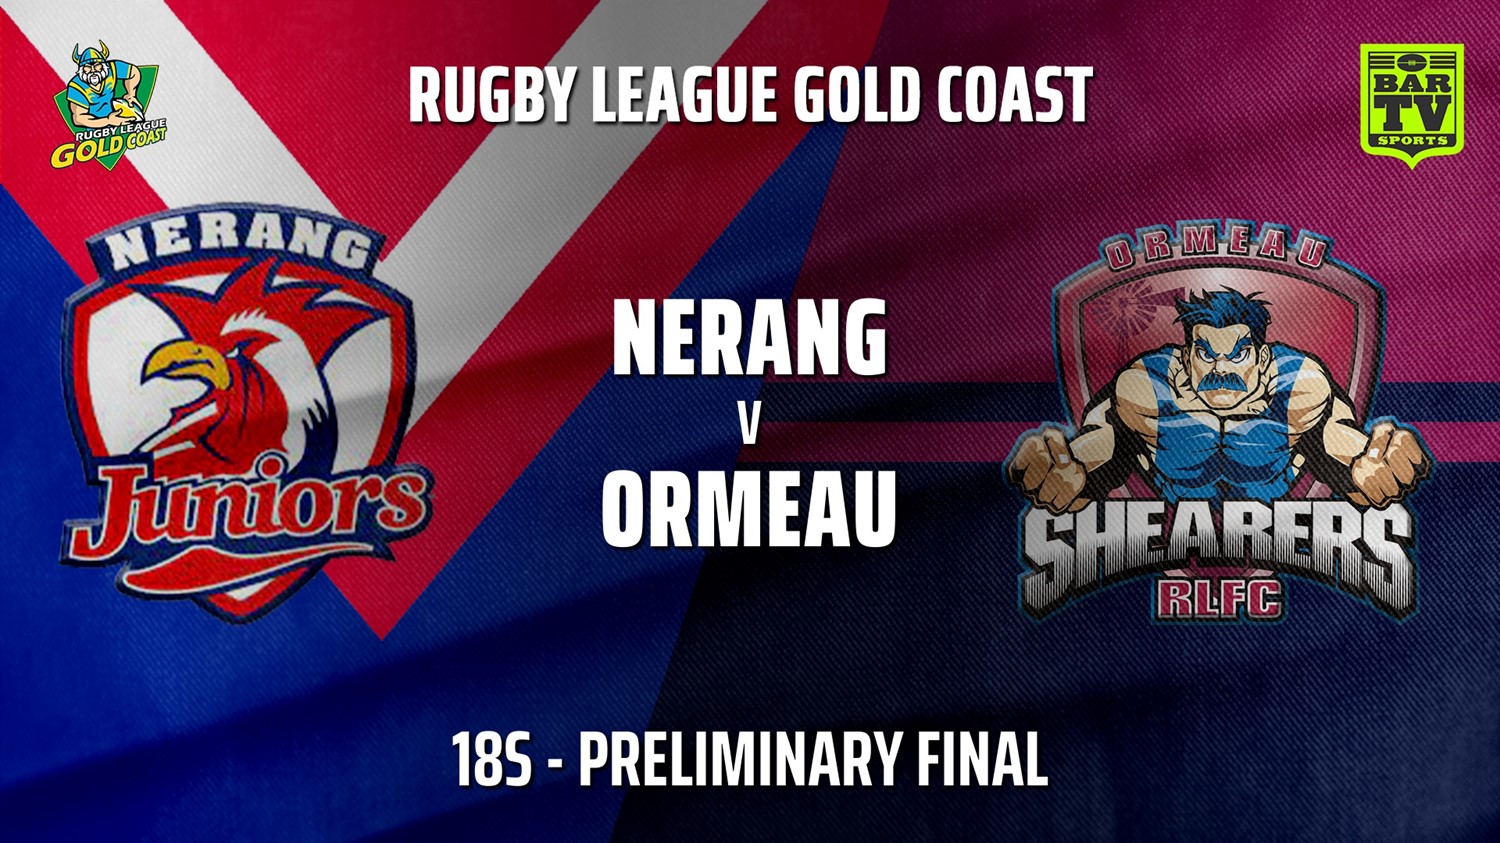 211010-Gold Coast Preliminary Final - 18s - Nerang Roosters v Ormeau Shearers Slate Image